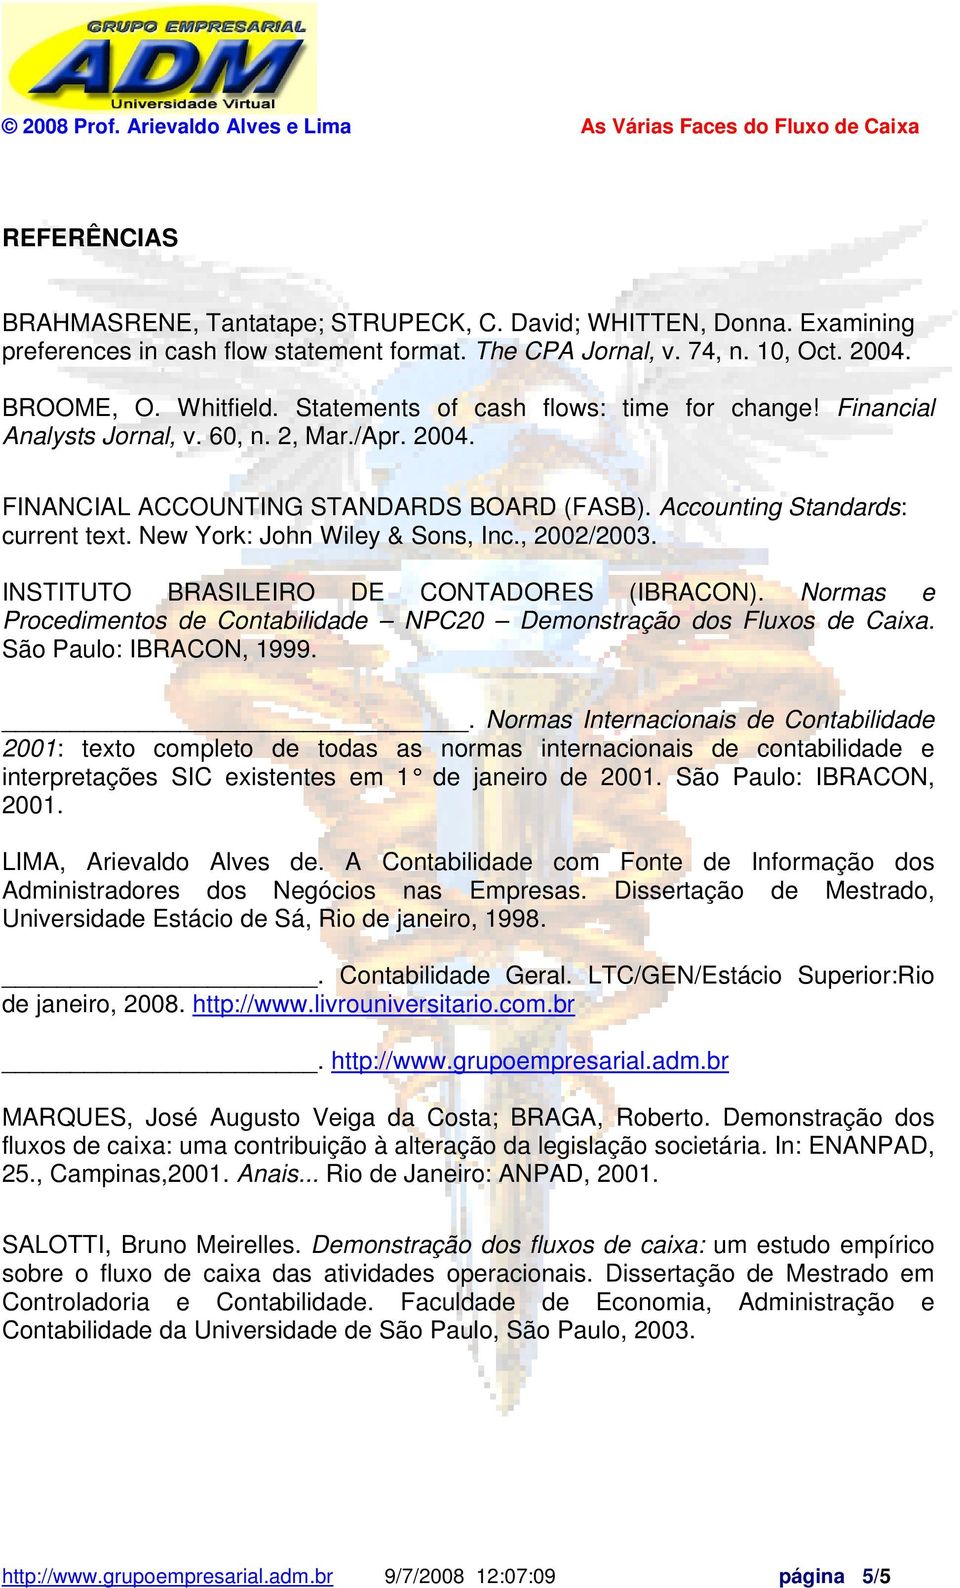 New York: John Wiley & Sons, Inc., 2002/2003. INSTITUTO BRASILEIRO DE CONTADORES (IBRACON). Normas e Procedimentos de Contabilidade NPC20 Demonstração dos Fluxos de Caixa. São Paulo: IBRACON, 1999.